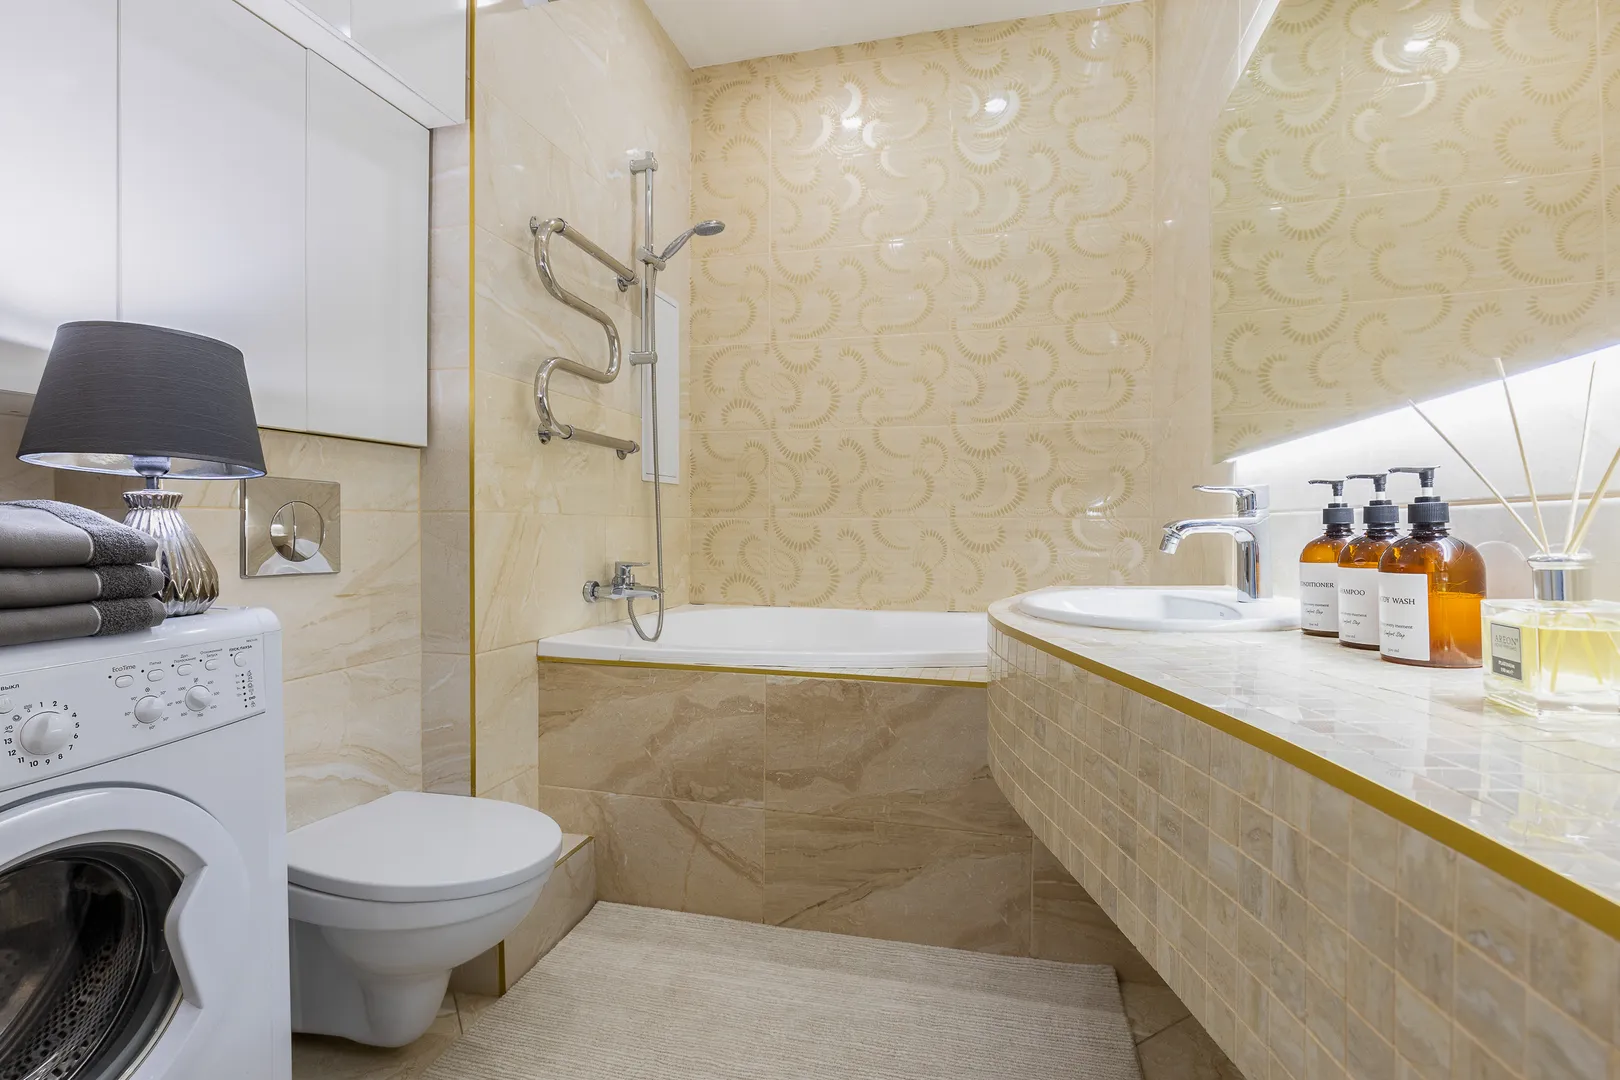 Ванная комната оснащена всеми необходимыми мелочами (Жидкое мыло, шампунь, гель душ, полотенца)